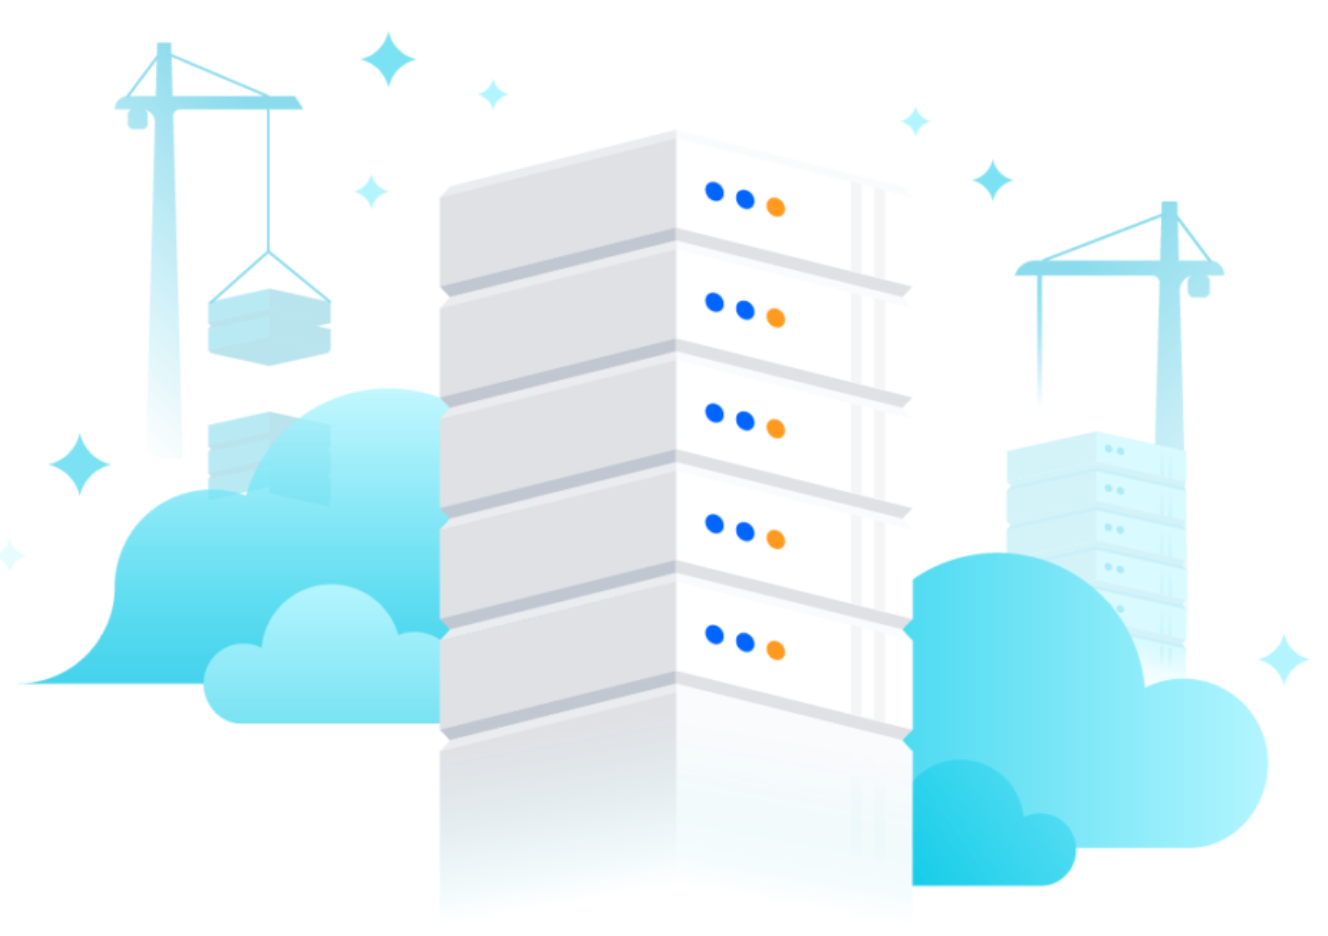 Diferenciadores clave entre Atlassian Cloud y Atlassian Data Center